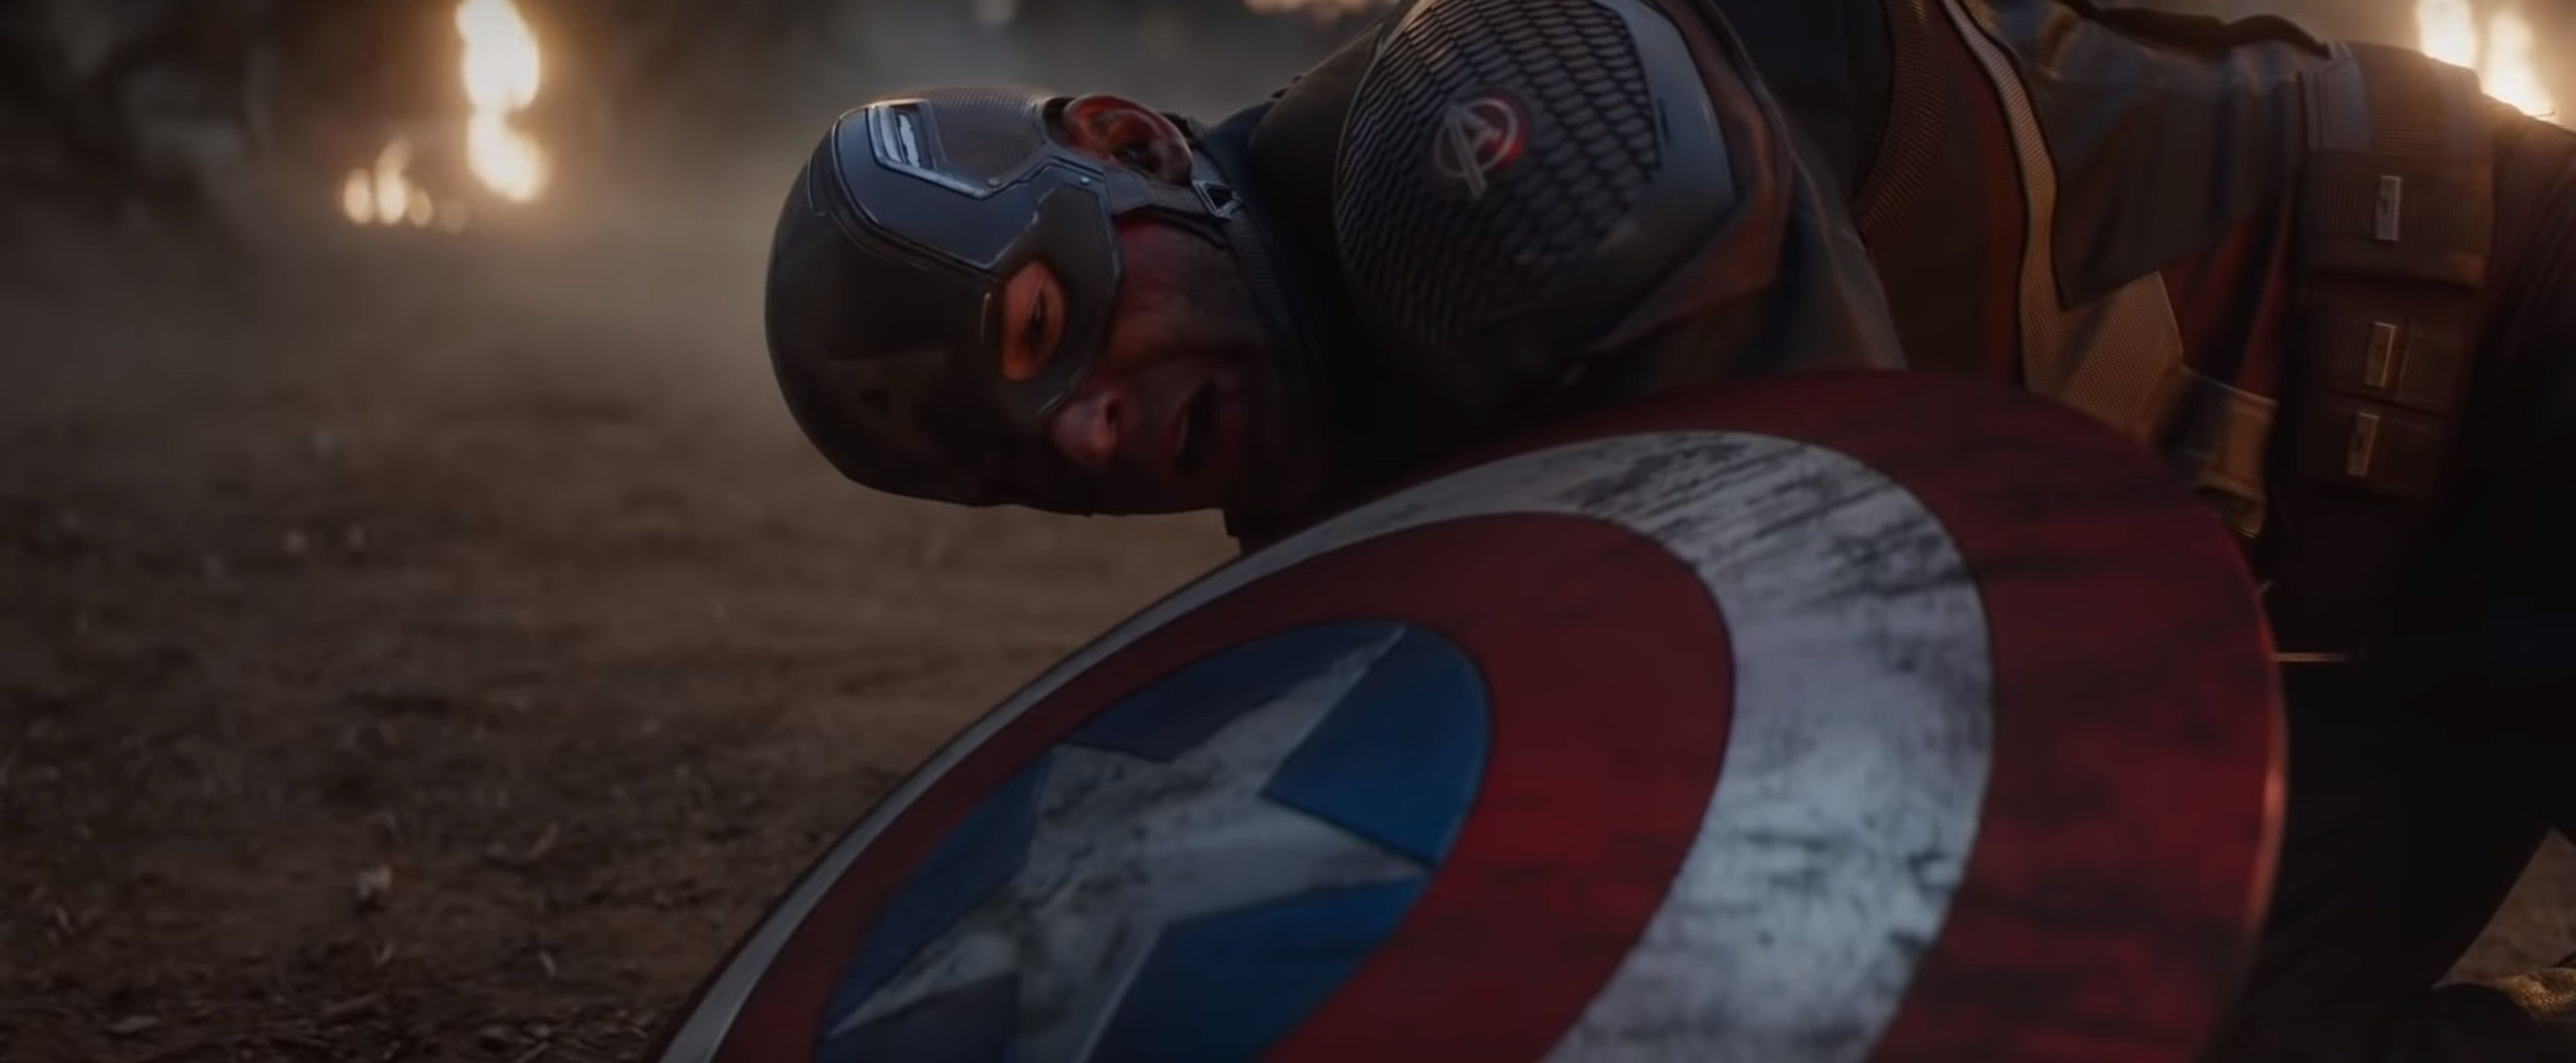 Capitán América - Vengadores Endgame